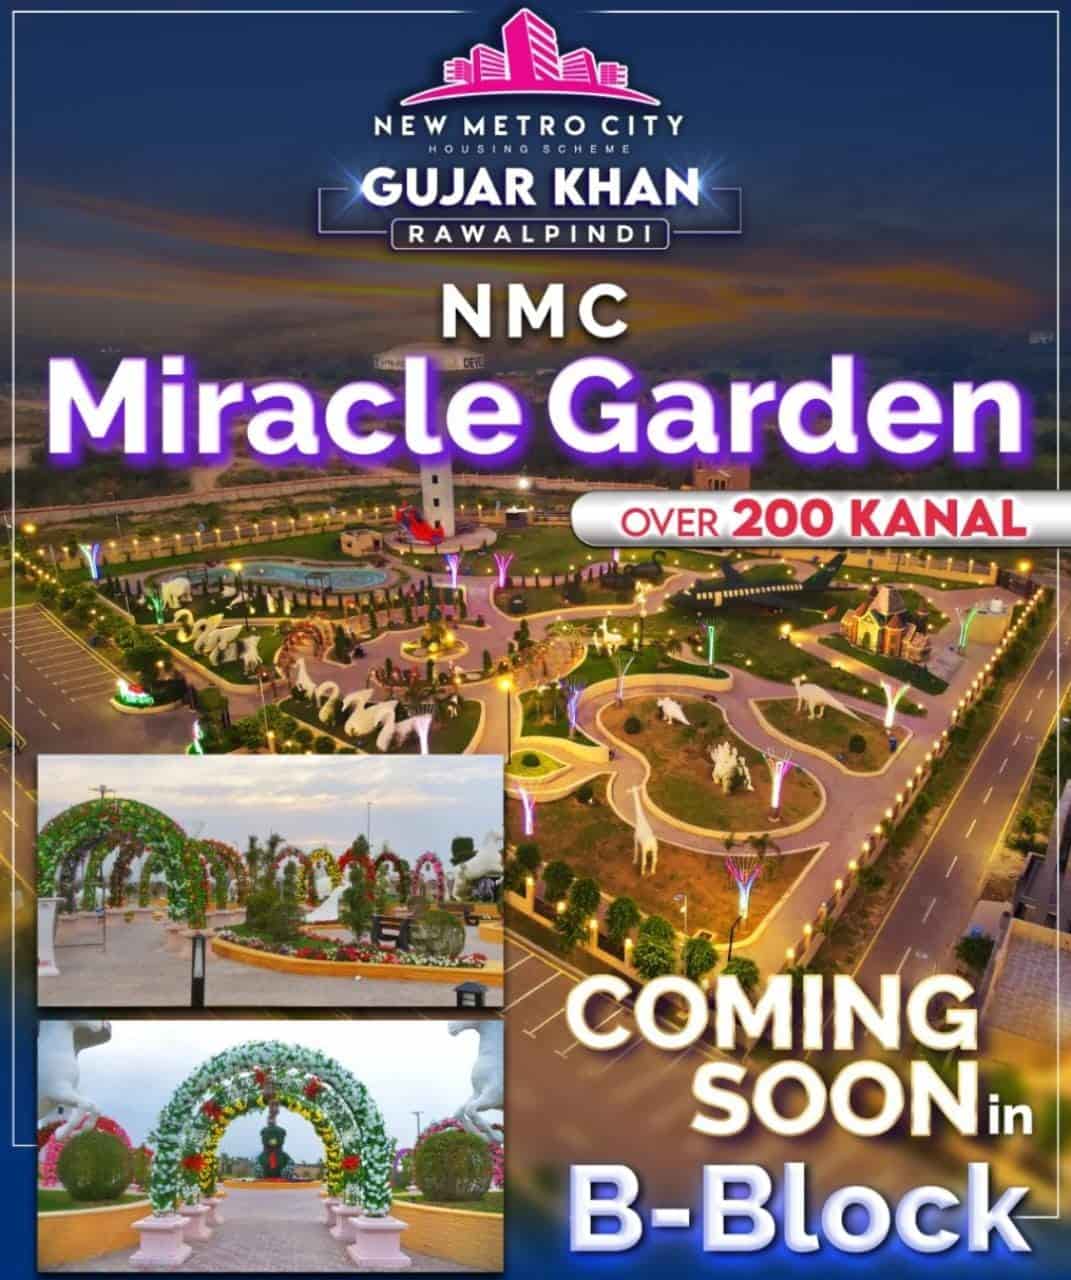 new metro city gujar khan nmc miracle garden